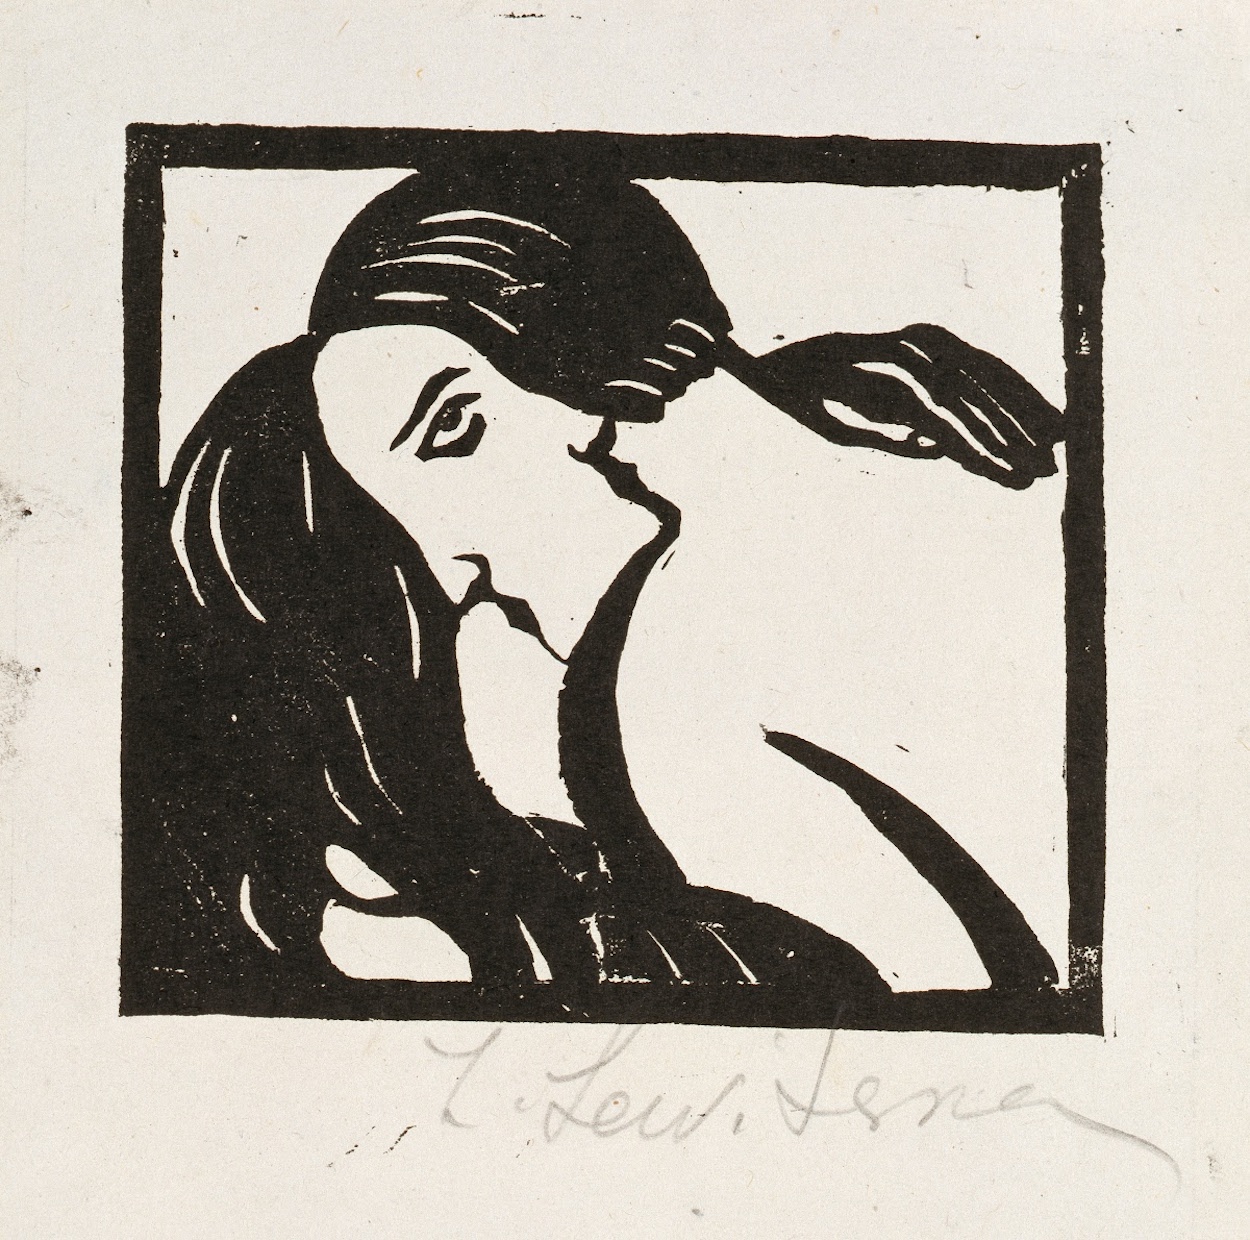 Pocałunek by Sofia Levytska - lata 20. XX wieku - 5,3 x 13,5 cm 